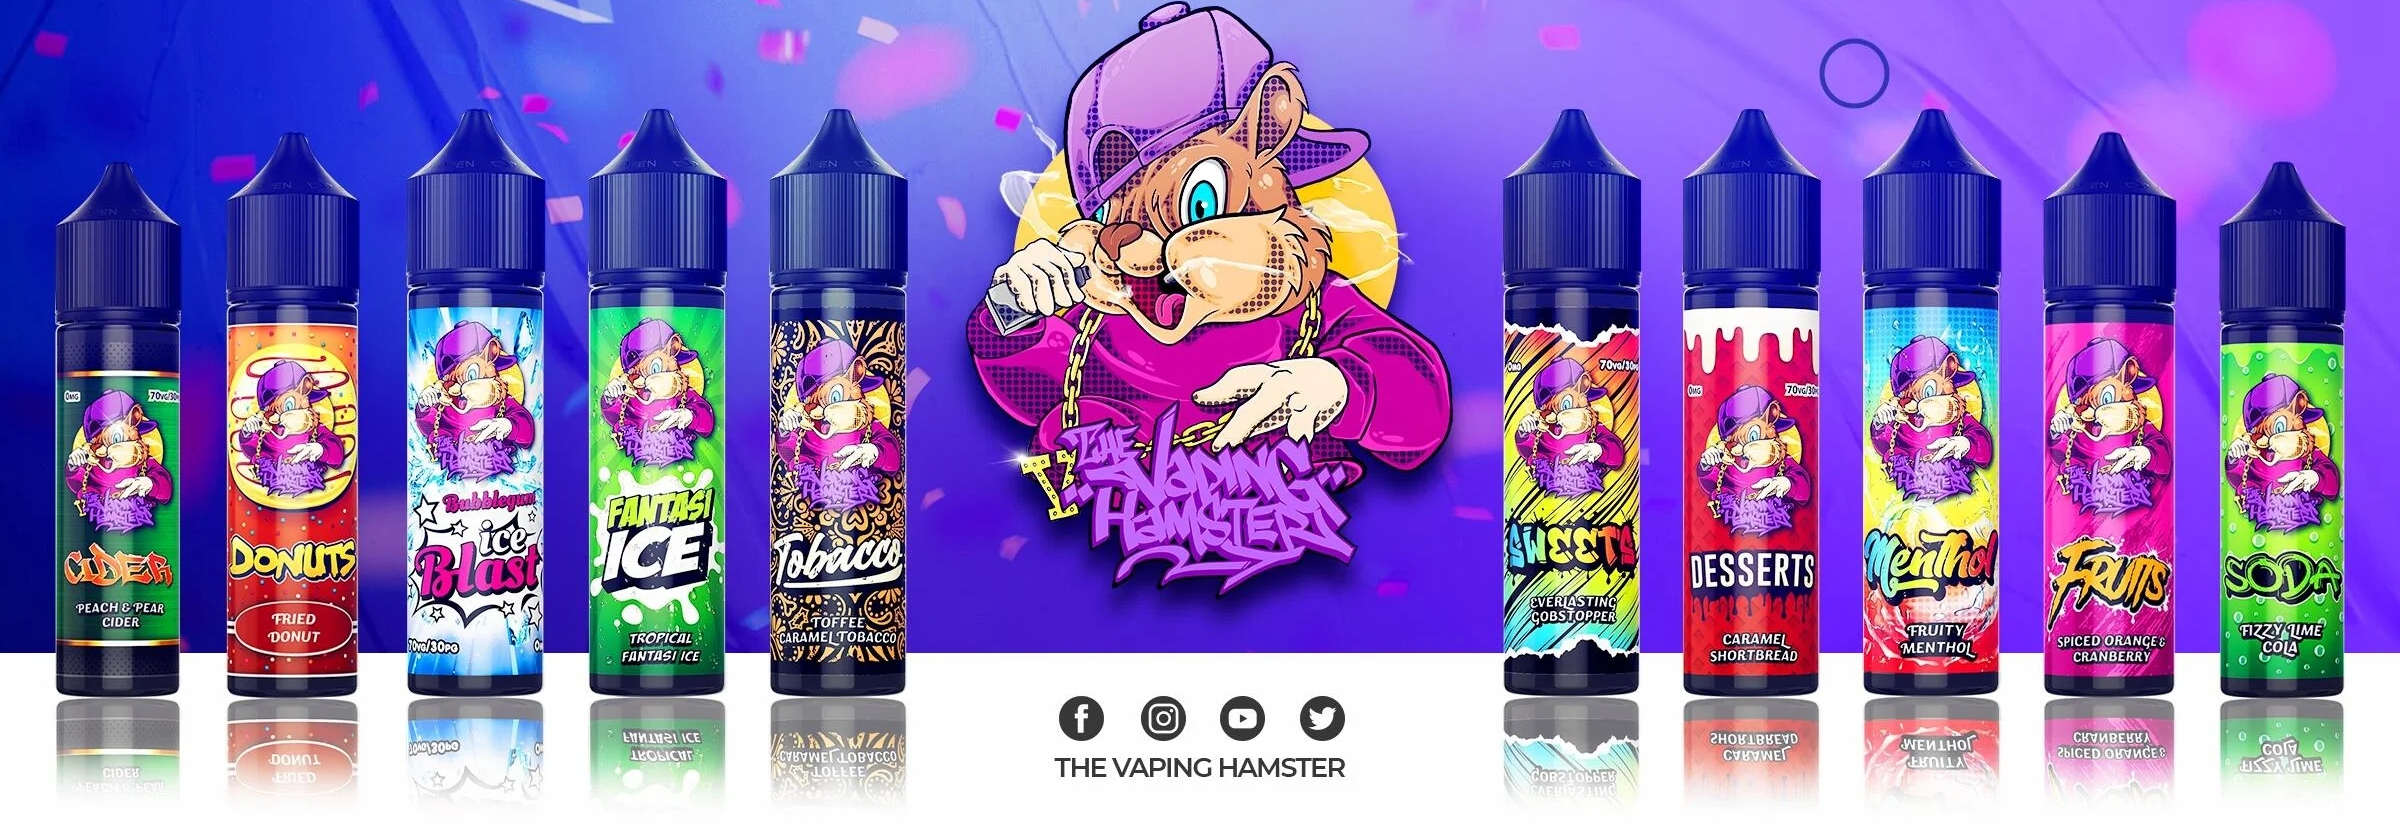 The Vaping Hamster Website Banner